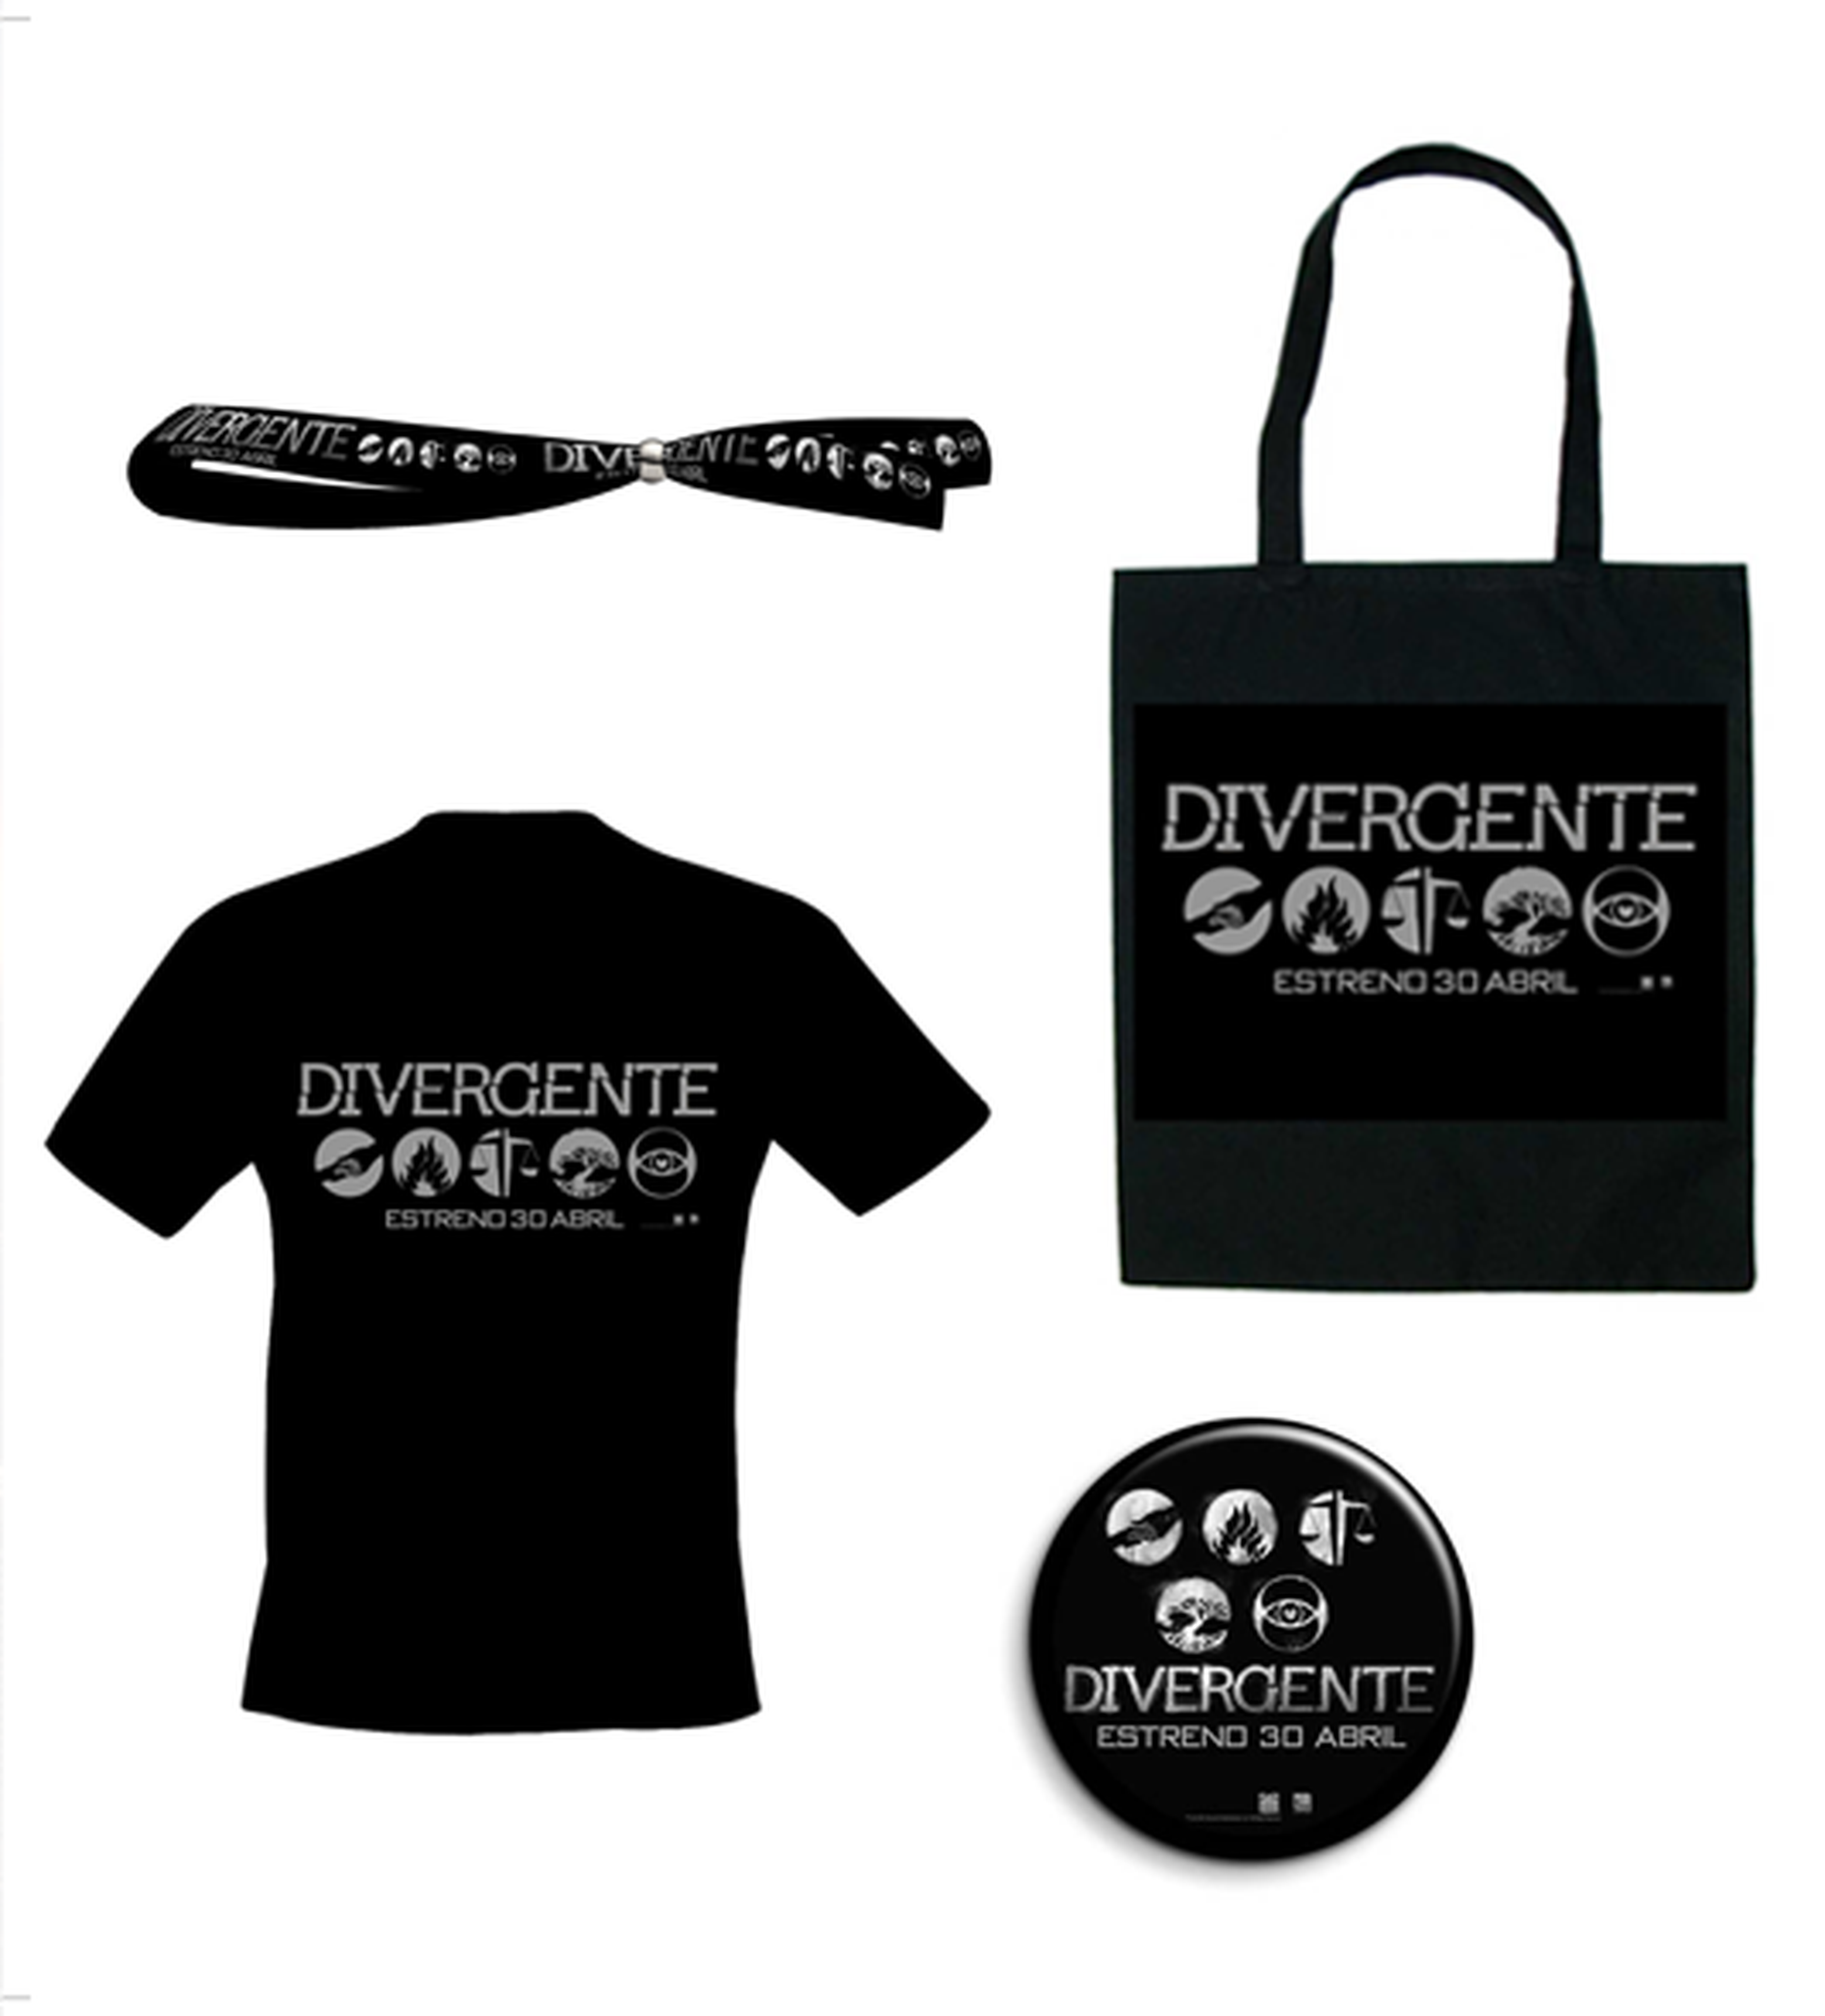 Concurso Divergente: ¡Regalamos 5 lotes de merchandising!